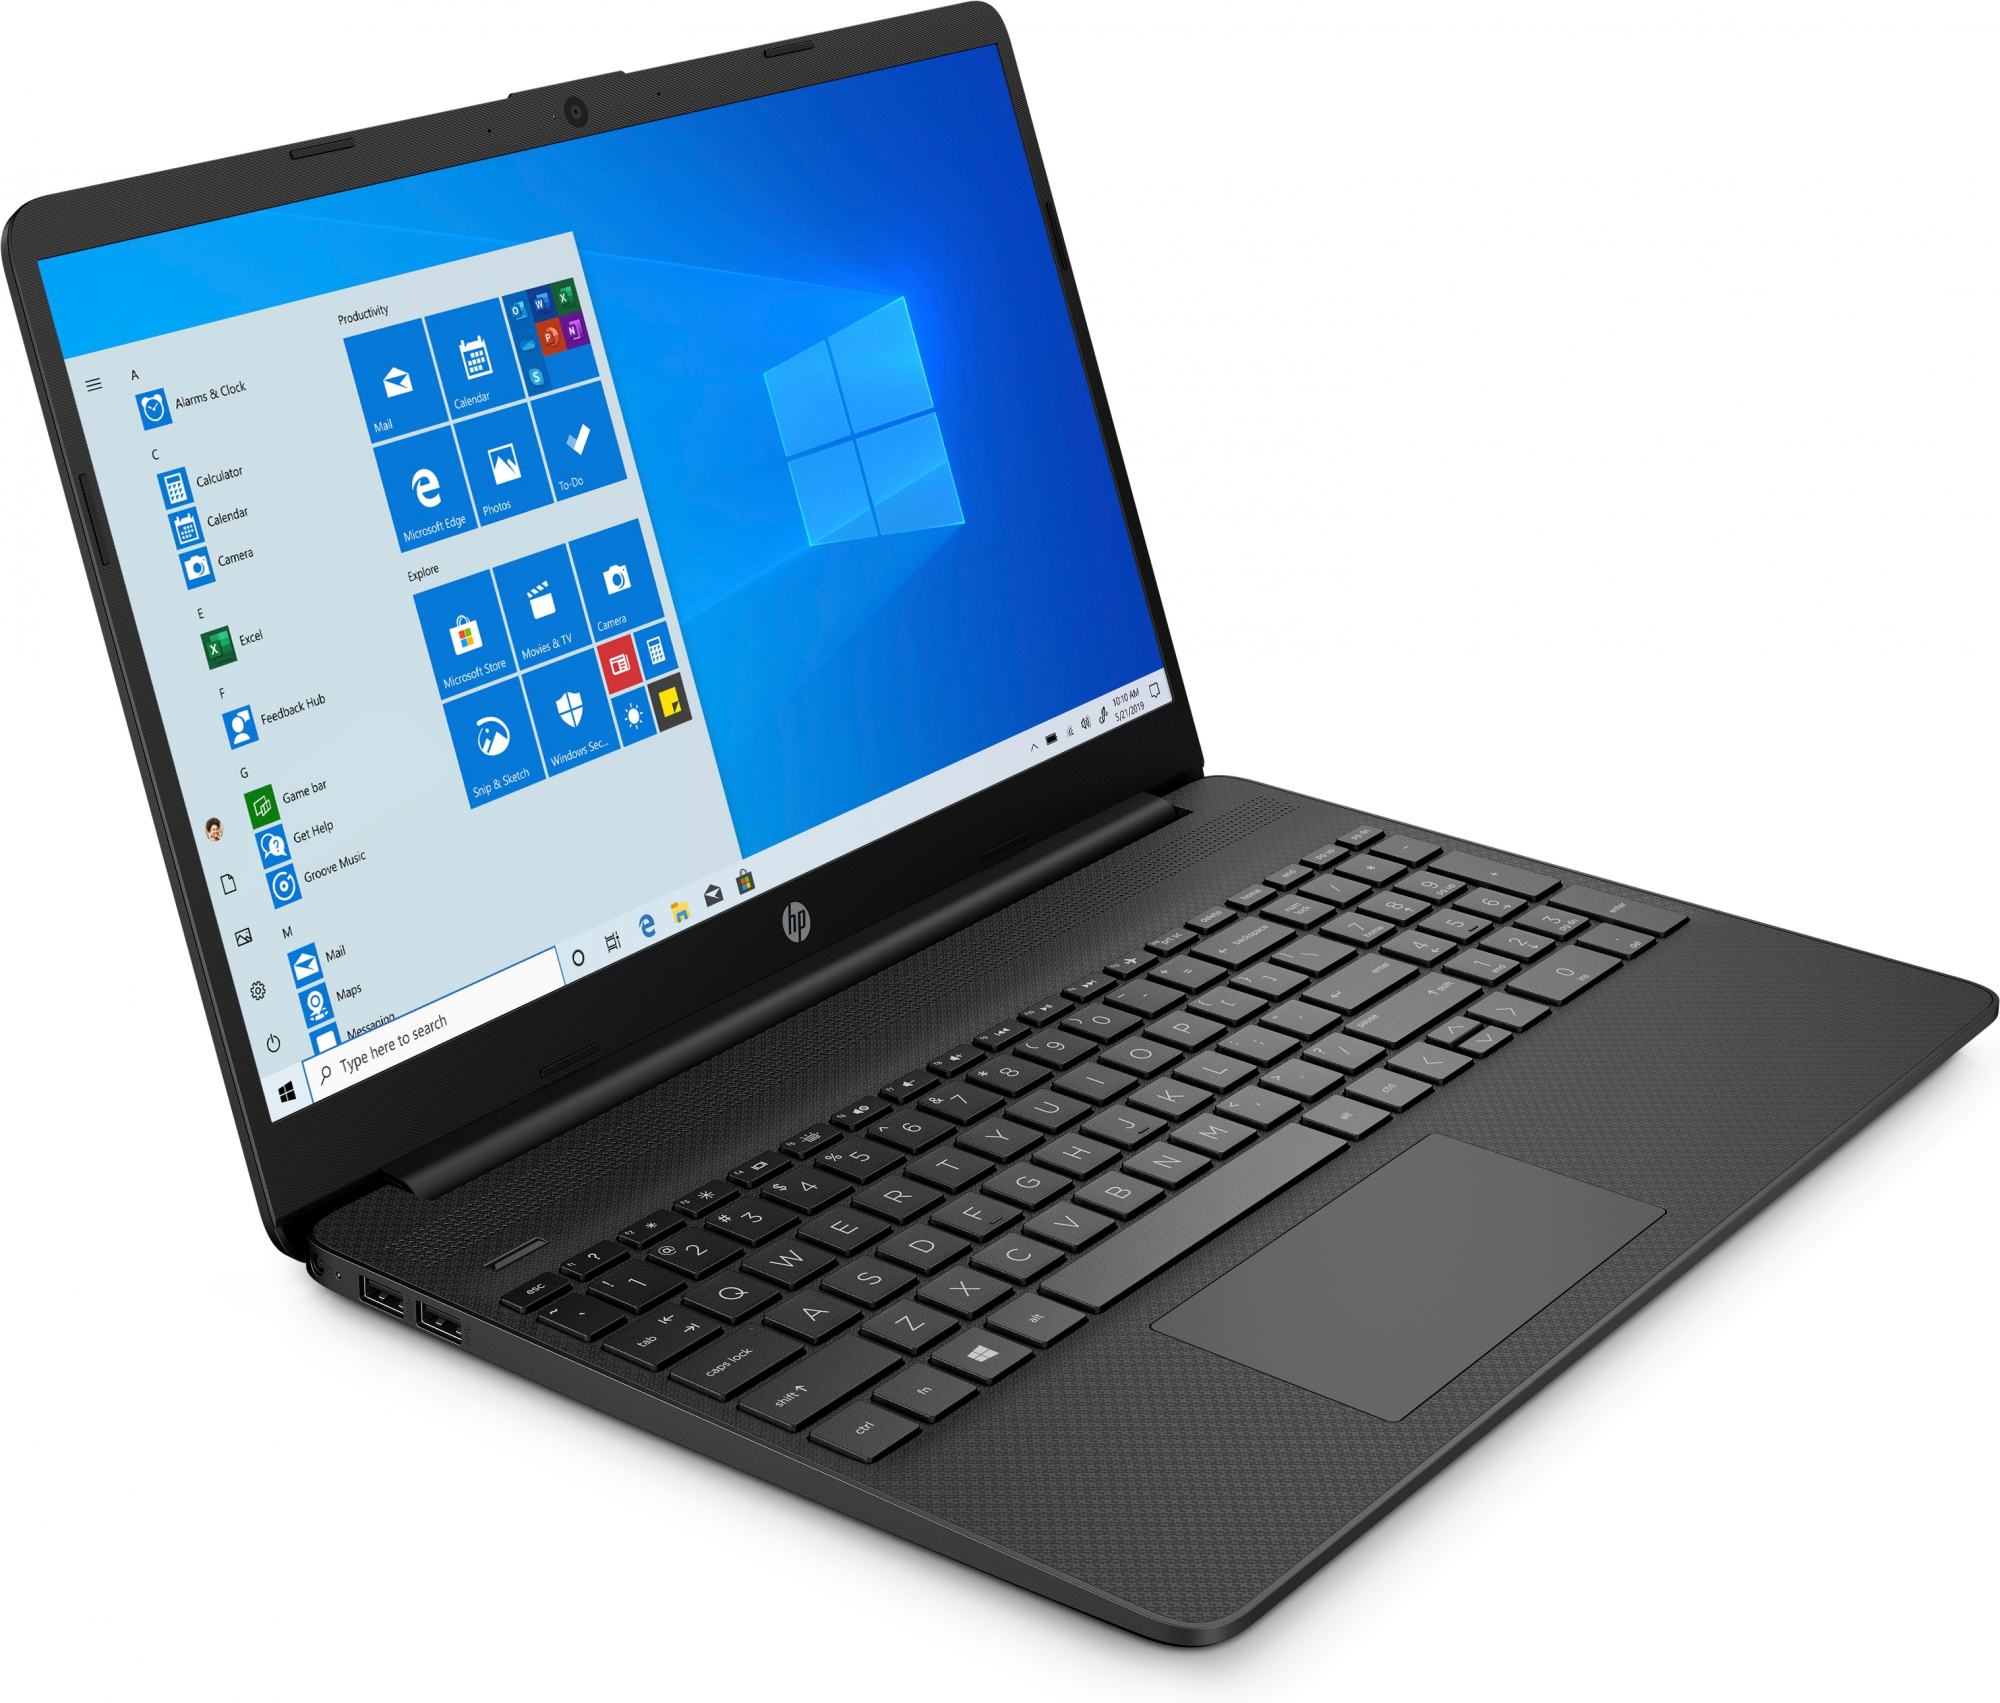 PC Notebook Nuovo HP CORE I5-1035G1 8GB 512GB W10H - Disponibile in 3-4 giorni lavorativi